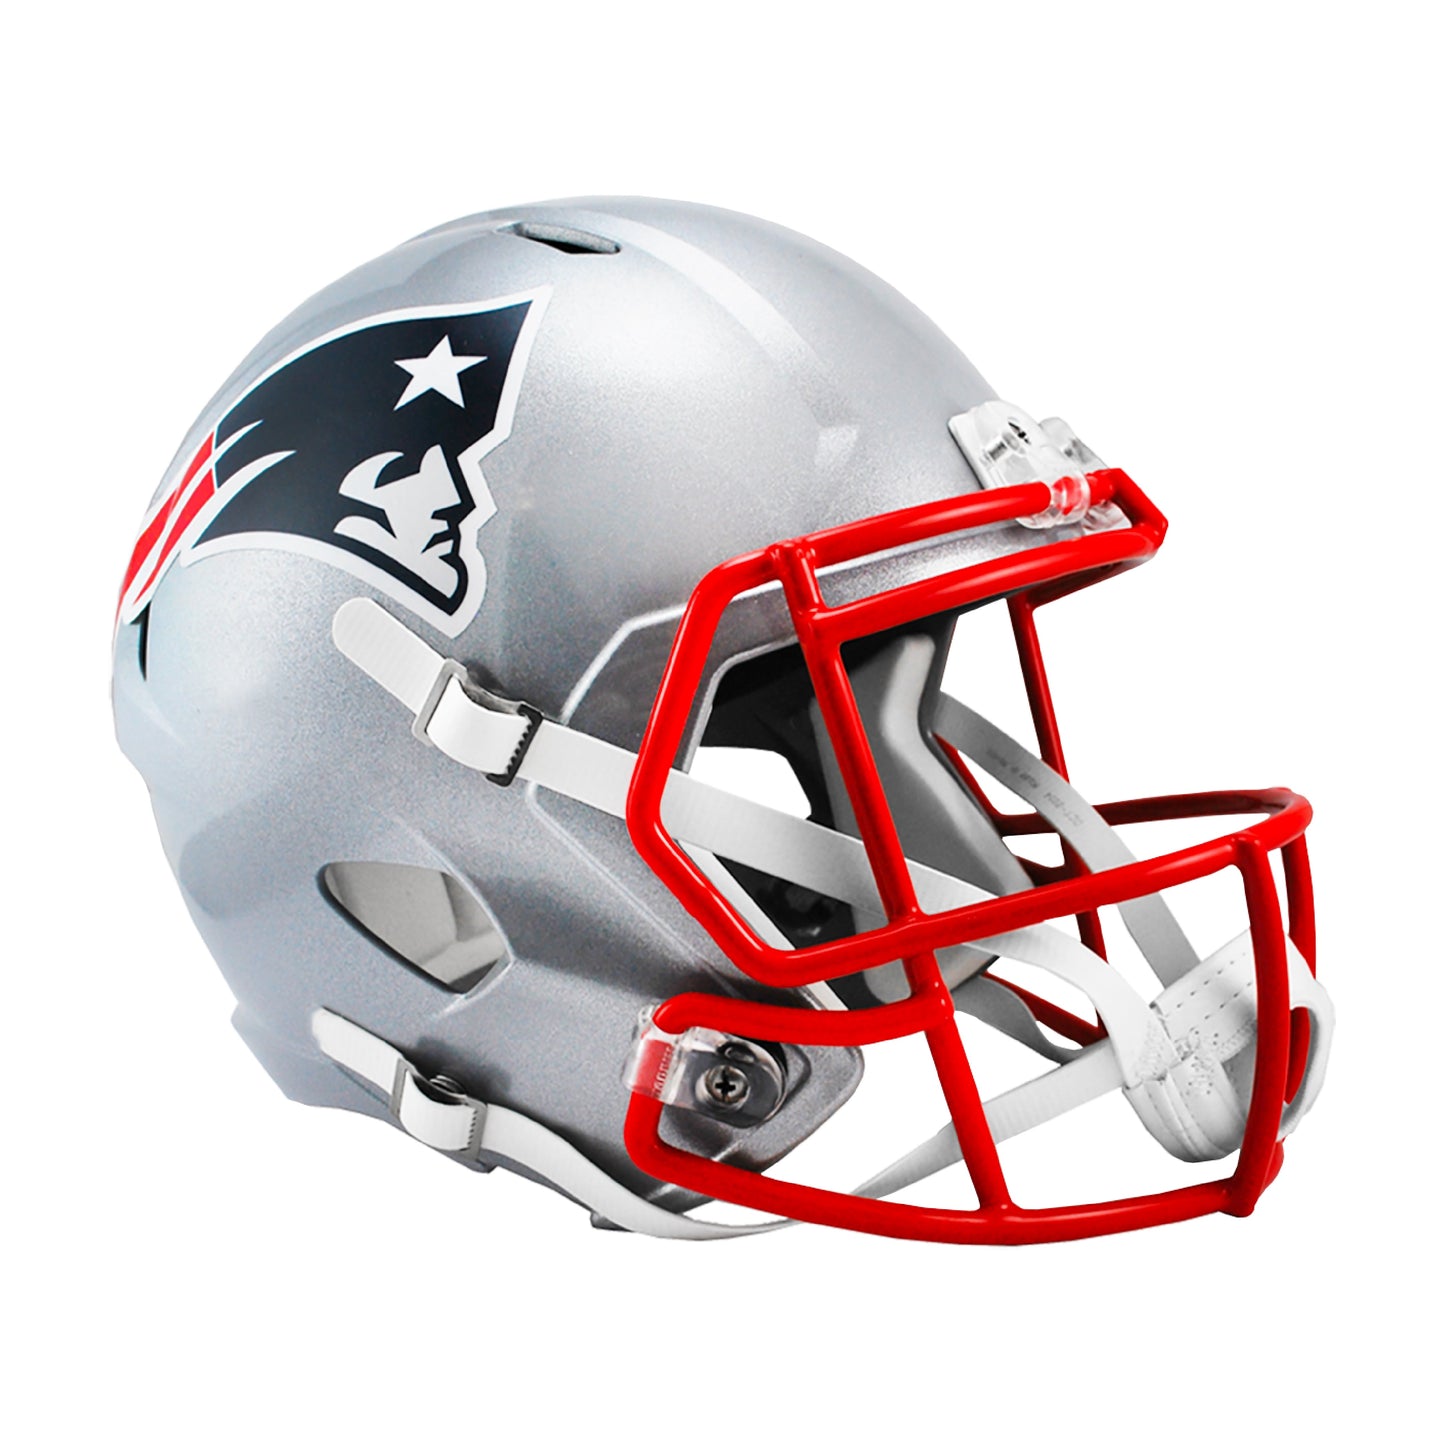 New England Patriots Riddell Speed Full Size Replica Football Helmet